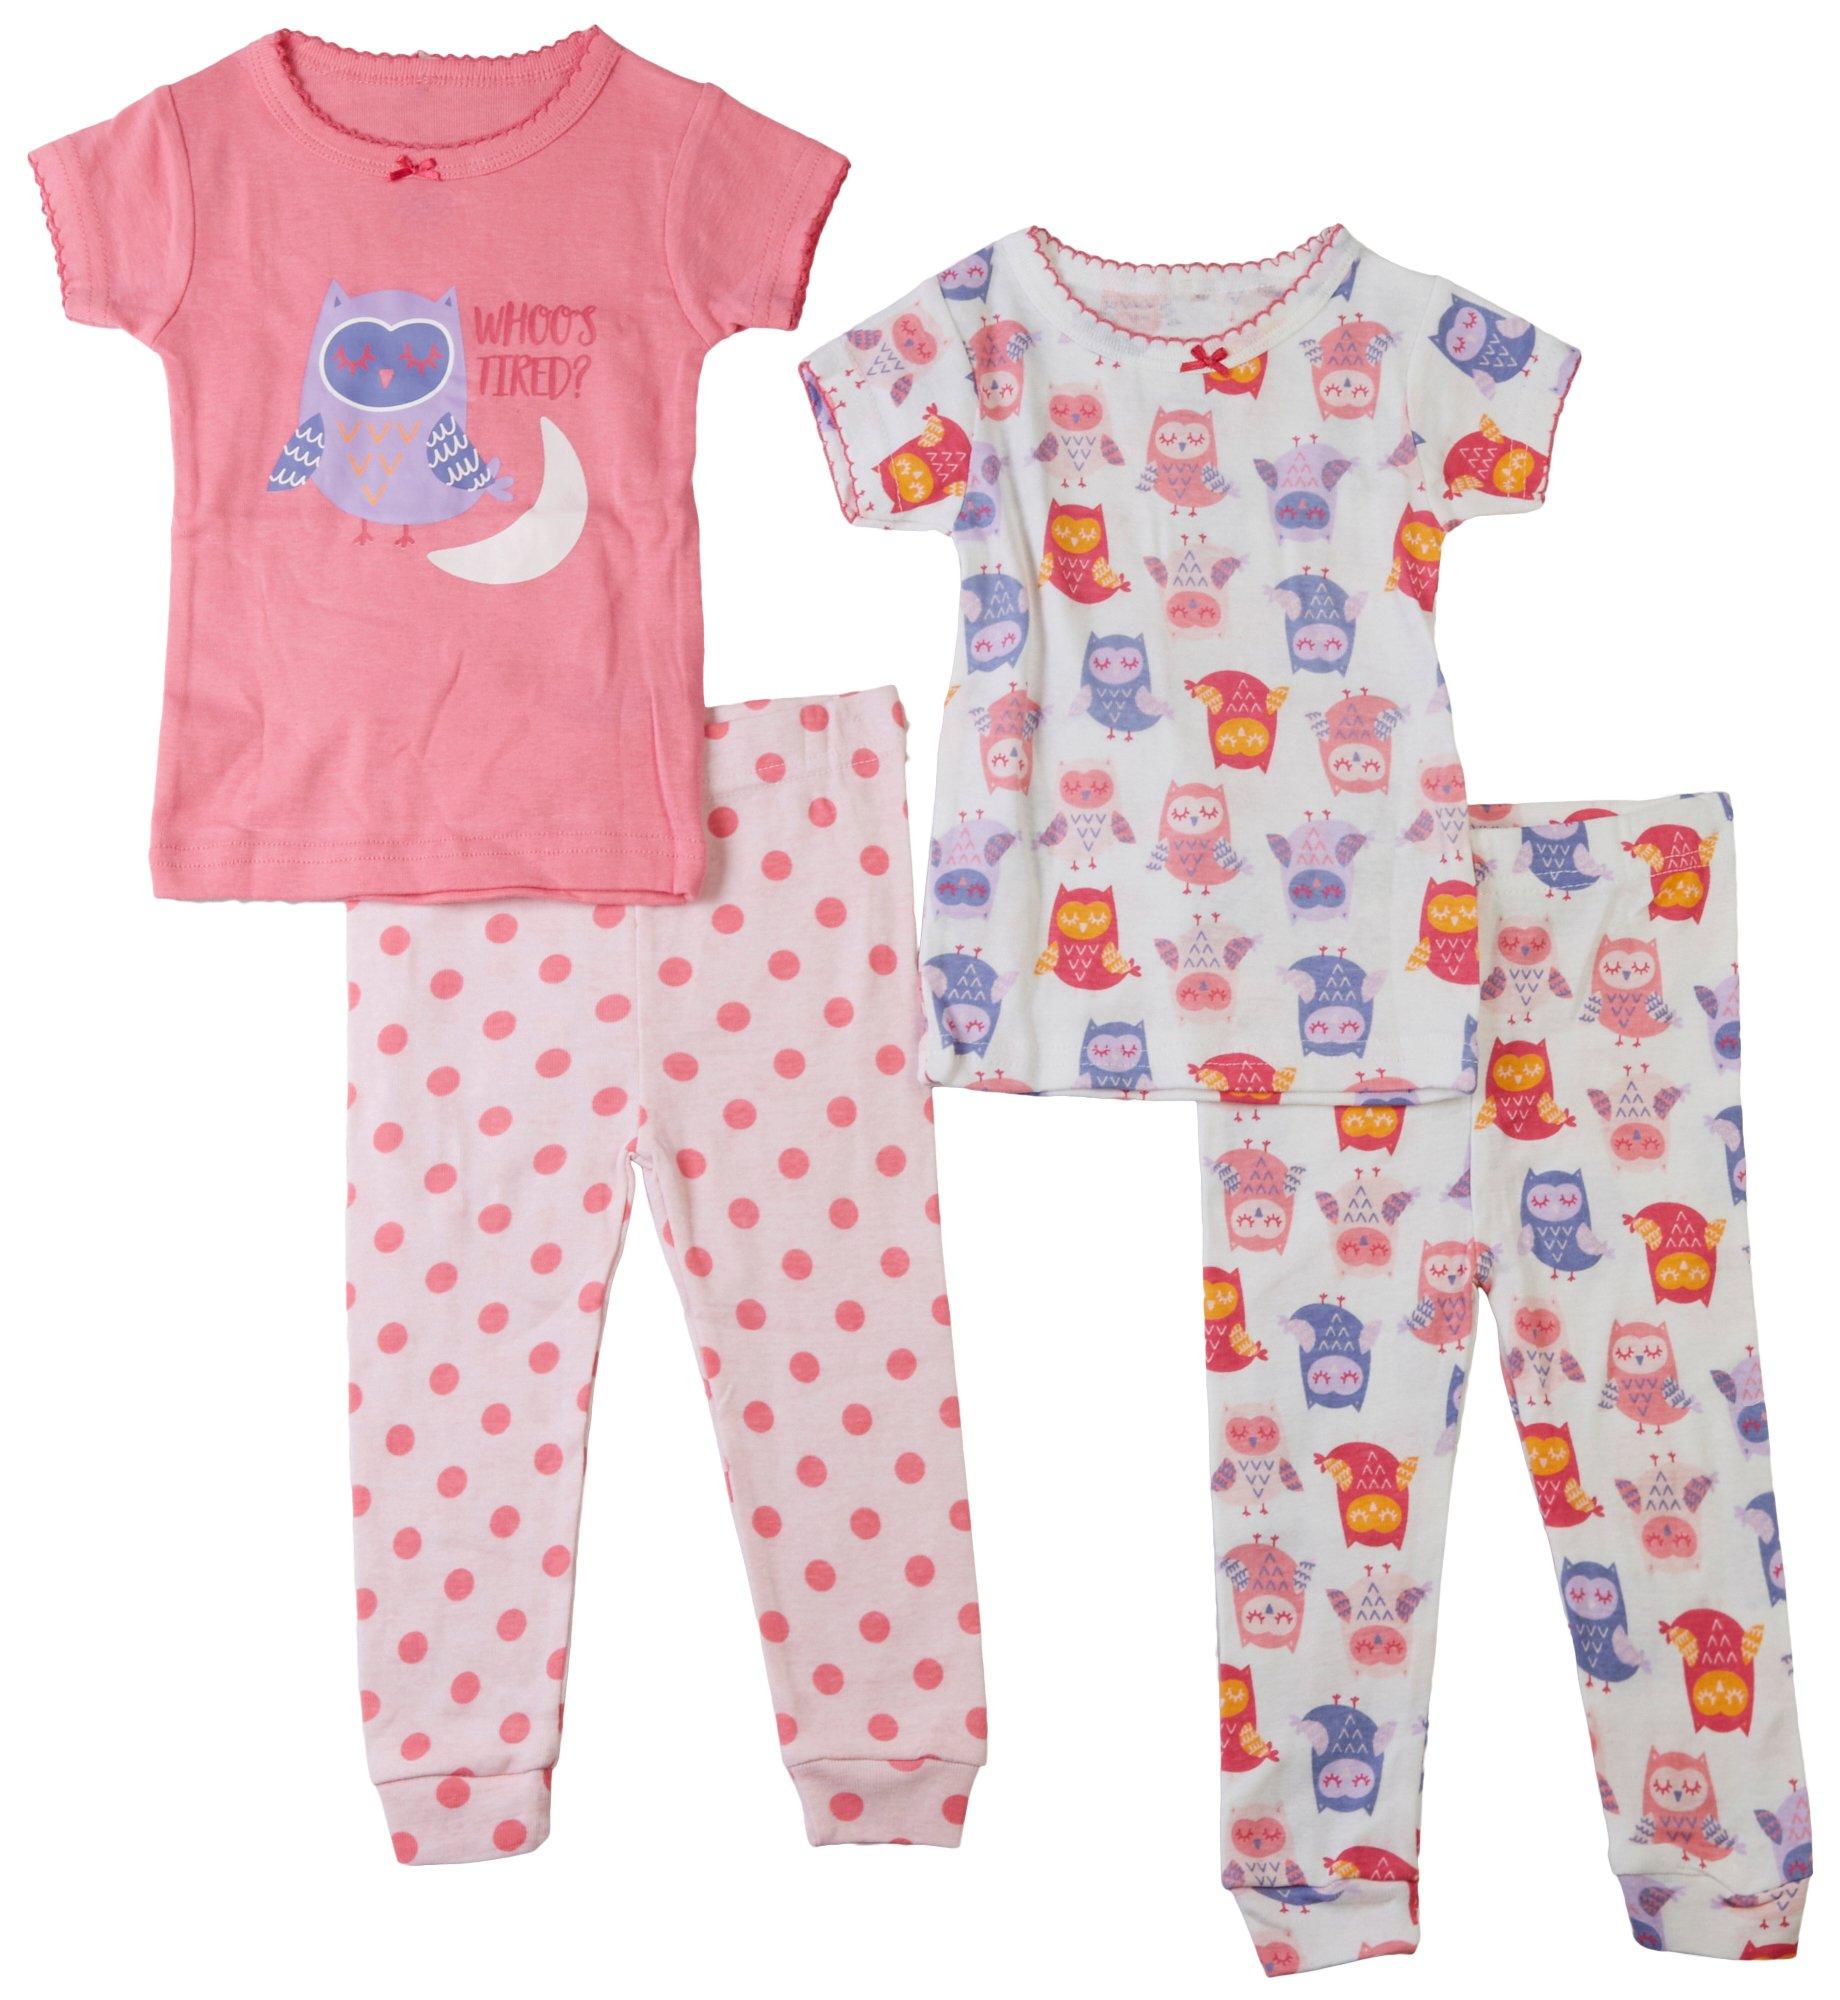 Baby Girls 4 pc. Whoos Tired Pajama Set